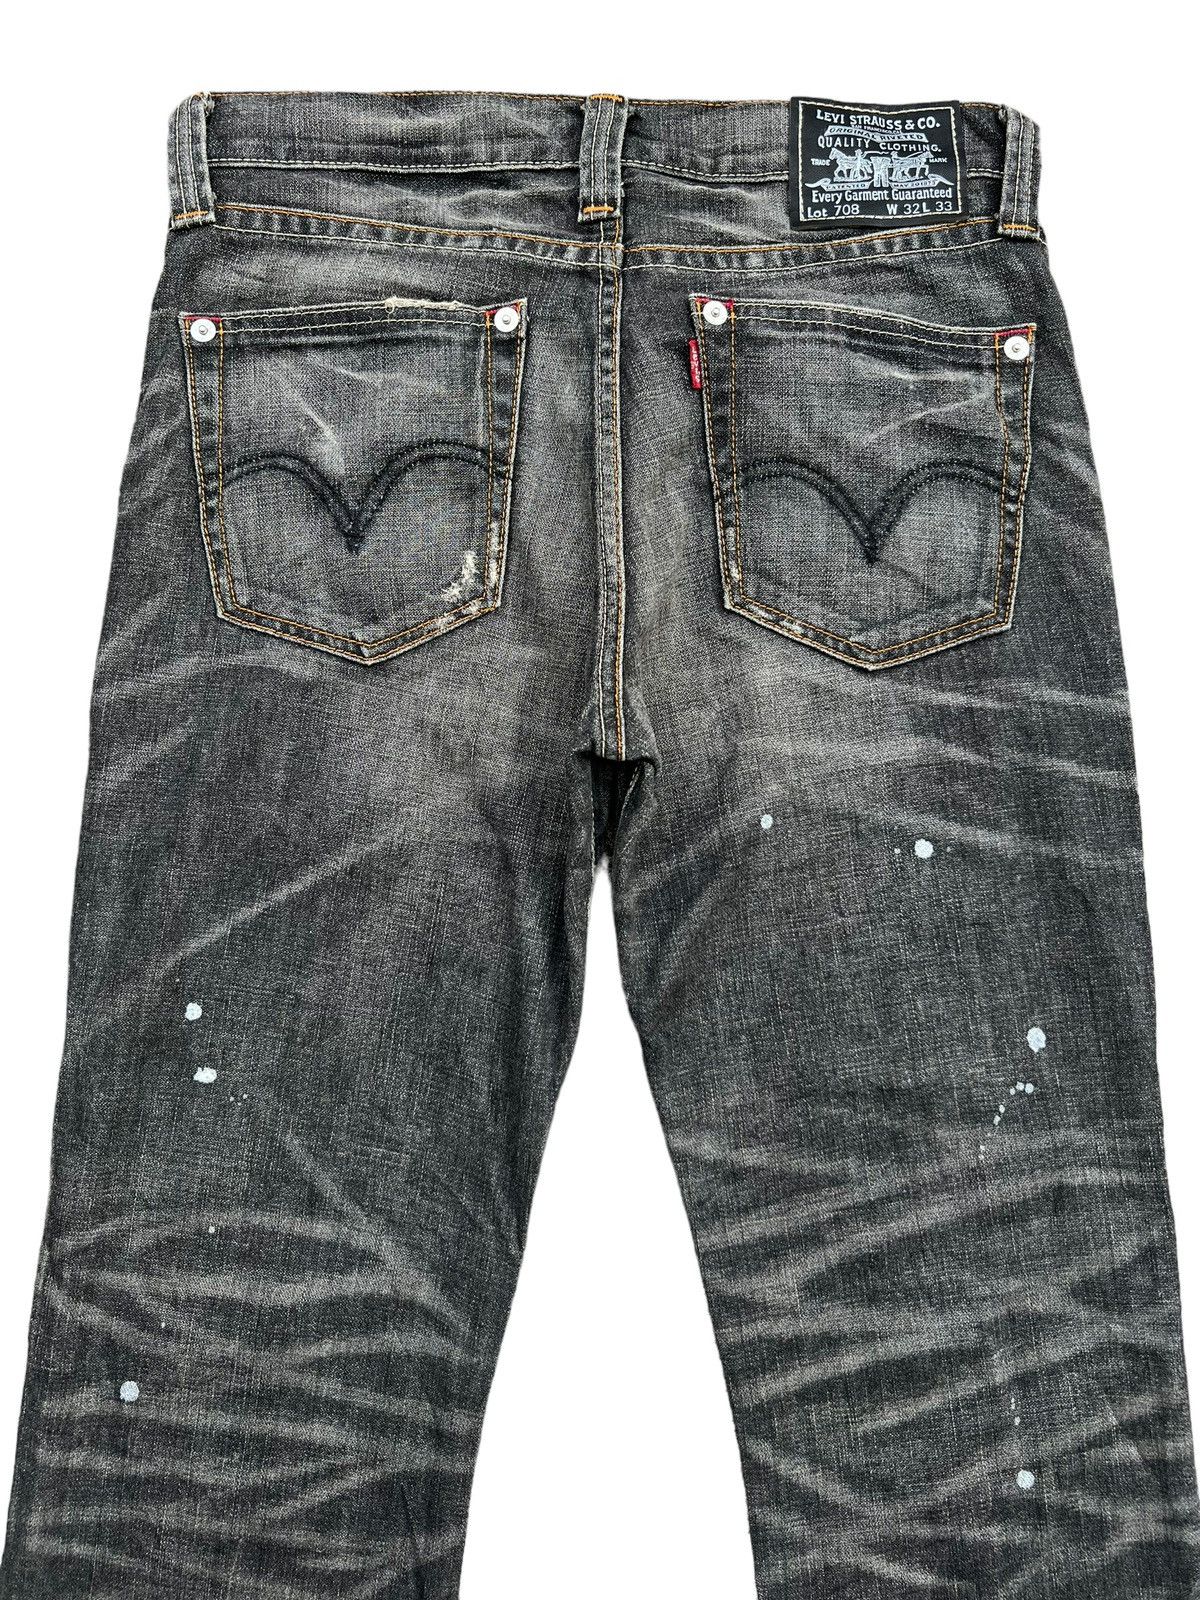 Levis 708 Distressed Paint Lowrise Flare Denim Jeans 33x34 - 5